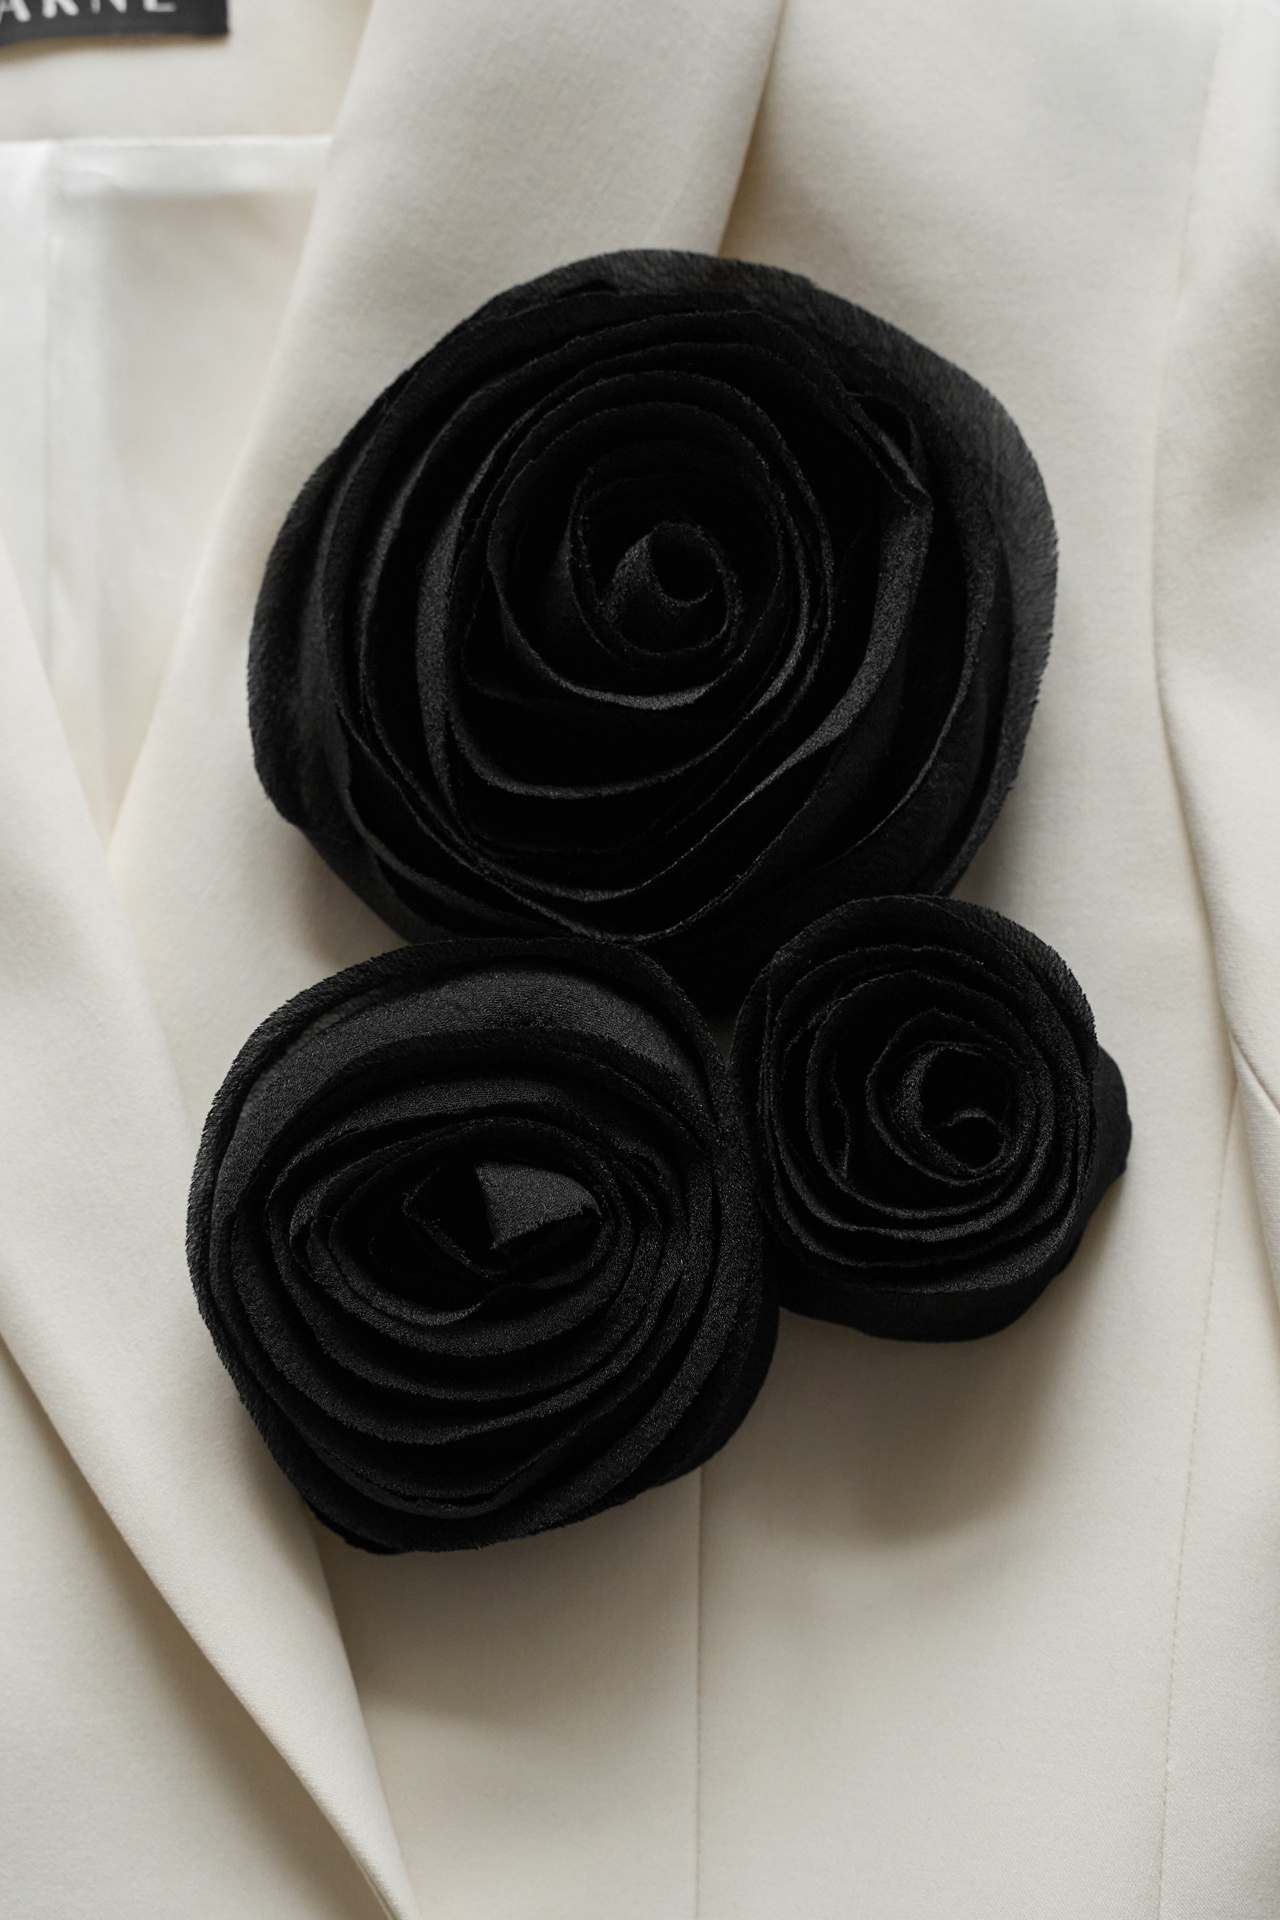 Брошь ручной работы из натуральной органзы в черном цвете